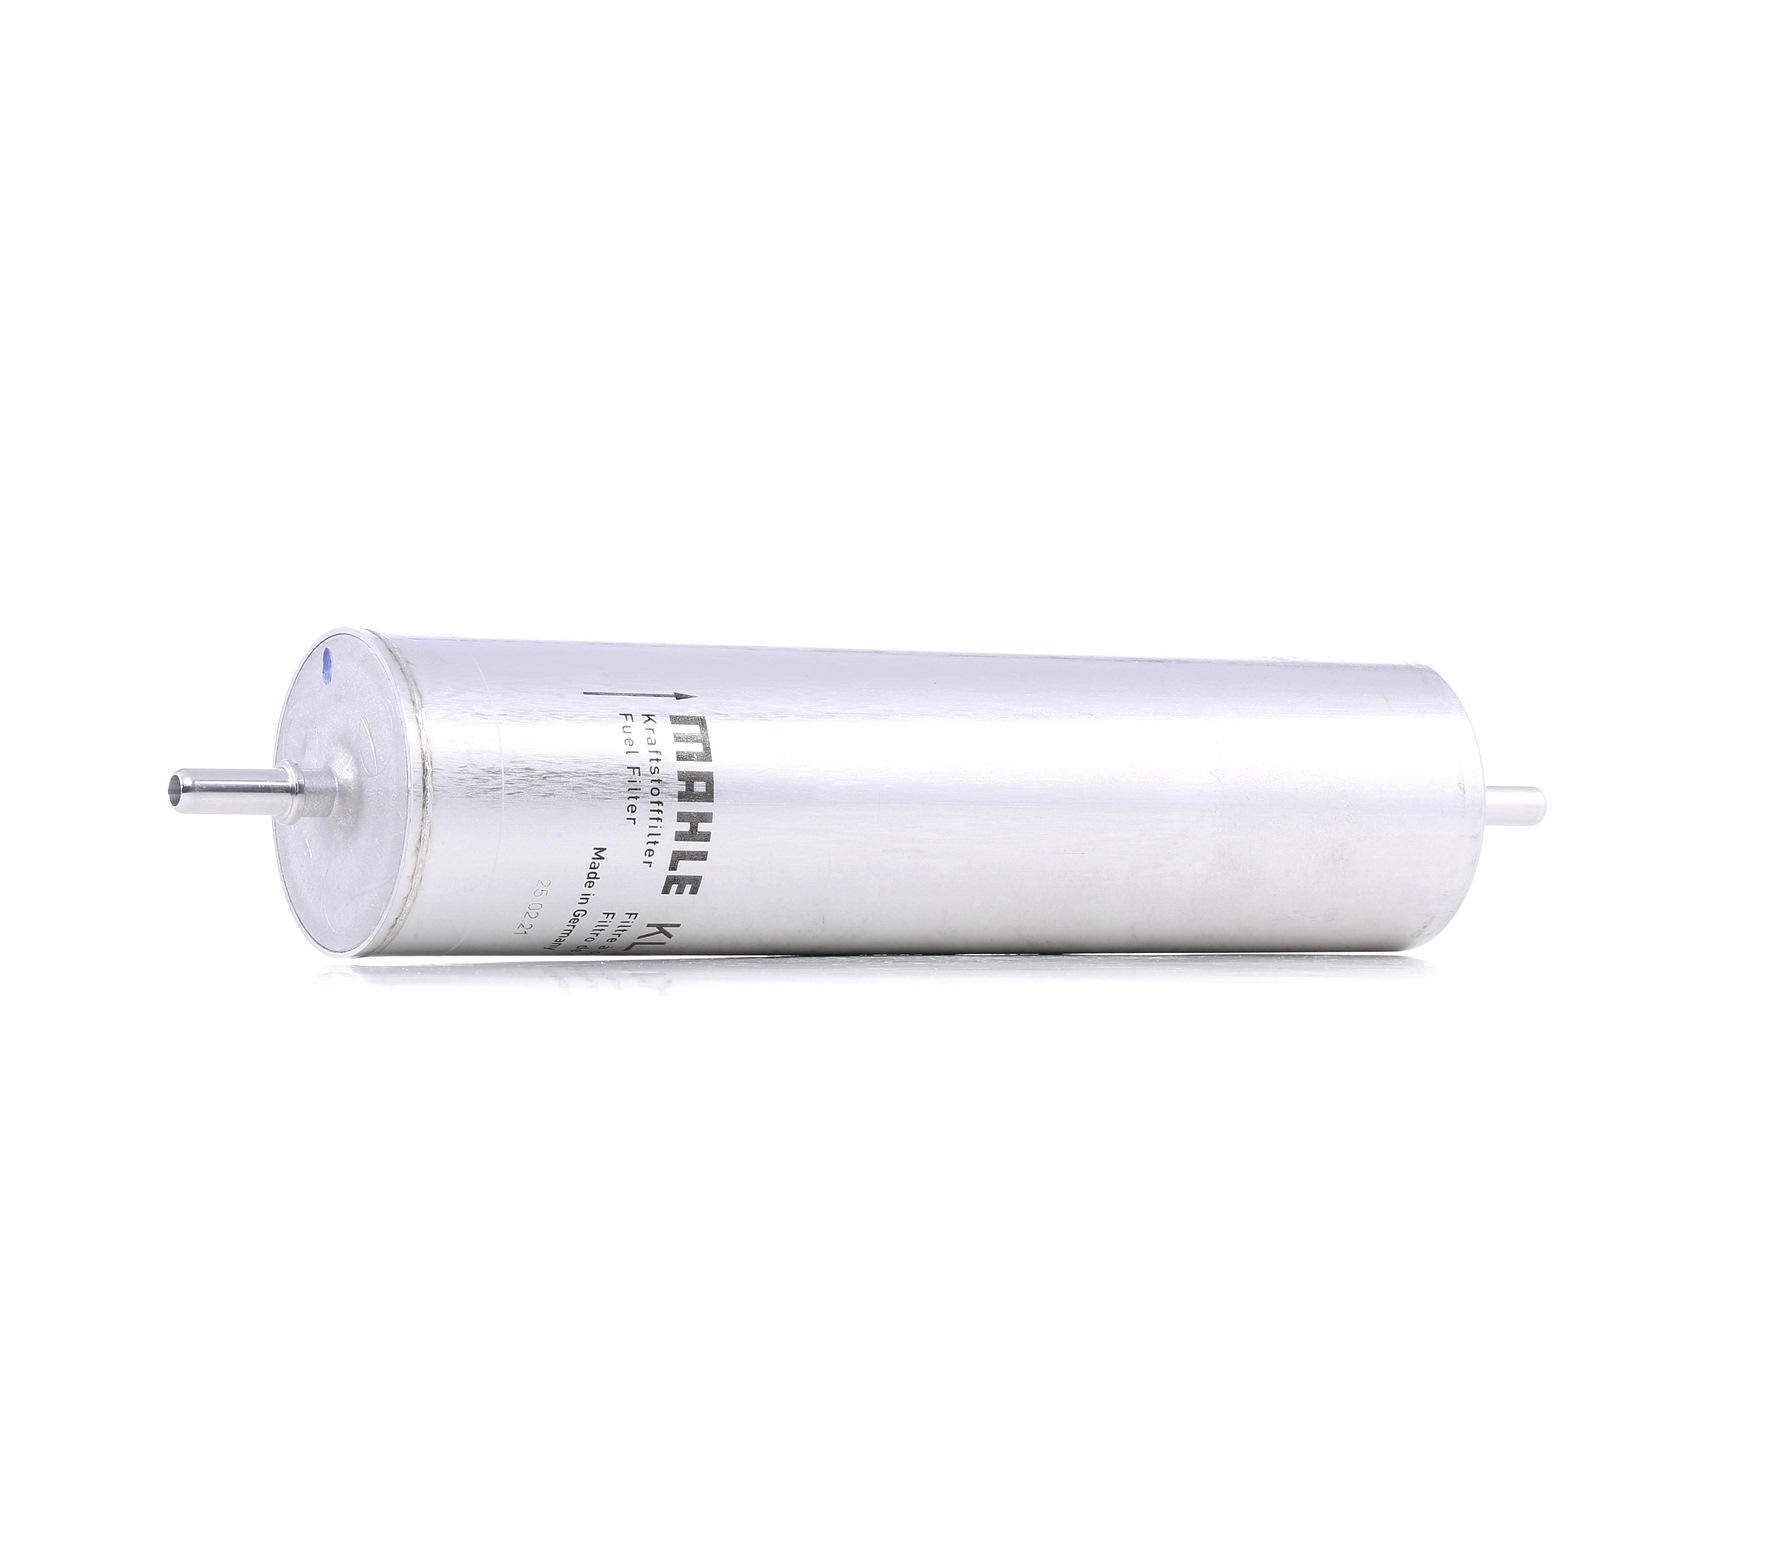 MAHLE ORIGINAL KL 232 Fuel filter In-Line Filter, 8mm, 7,9mm